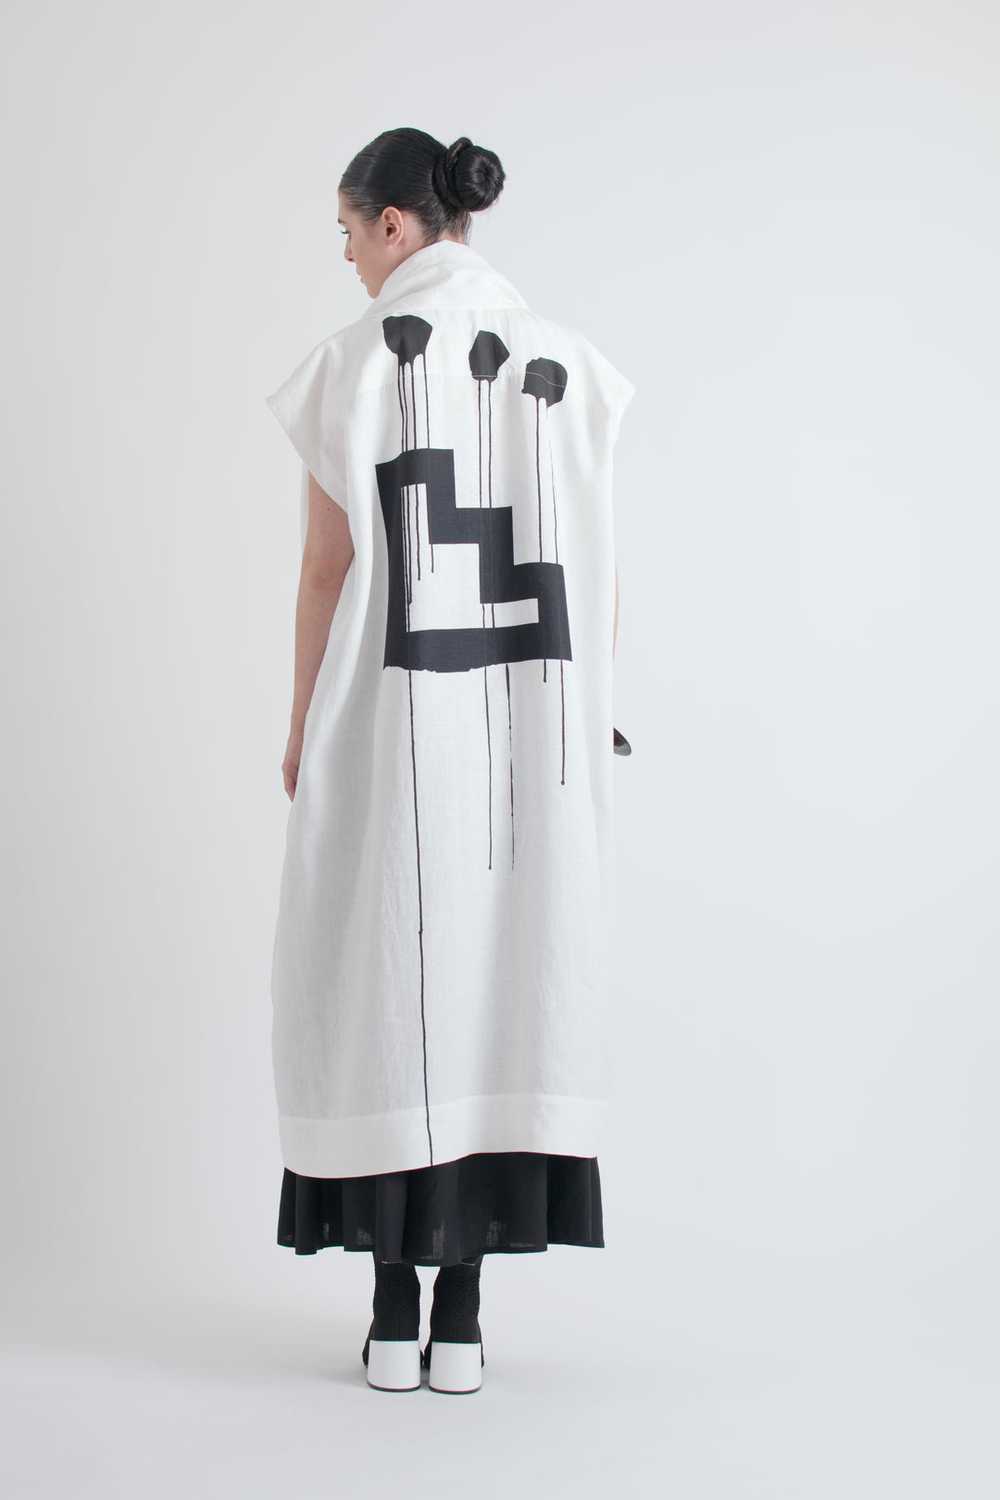 Issey Miyake Ikko Tanaka Graphic Print Linen Robe wit… - Gem